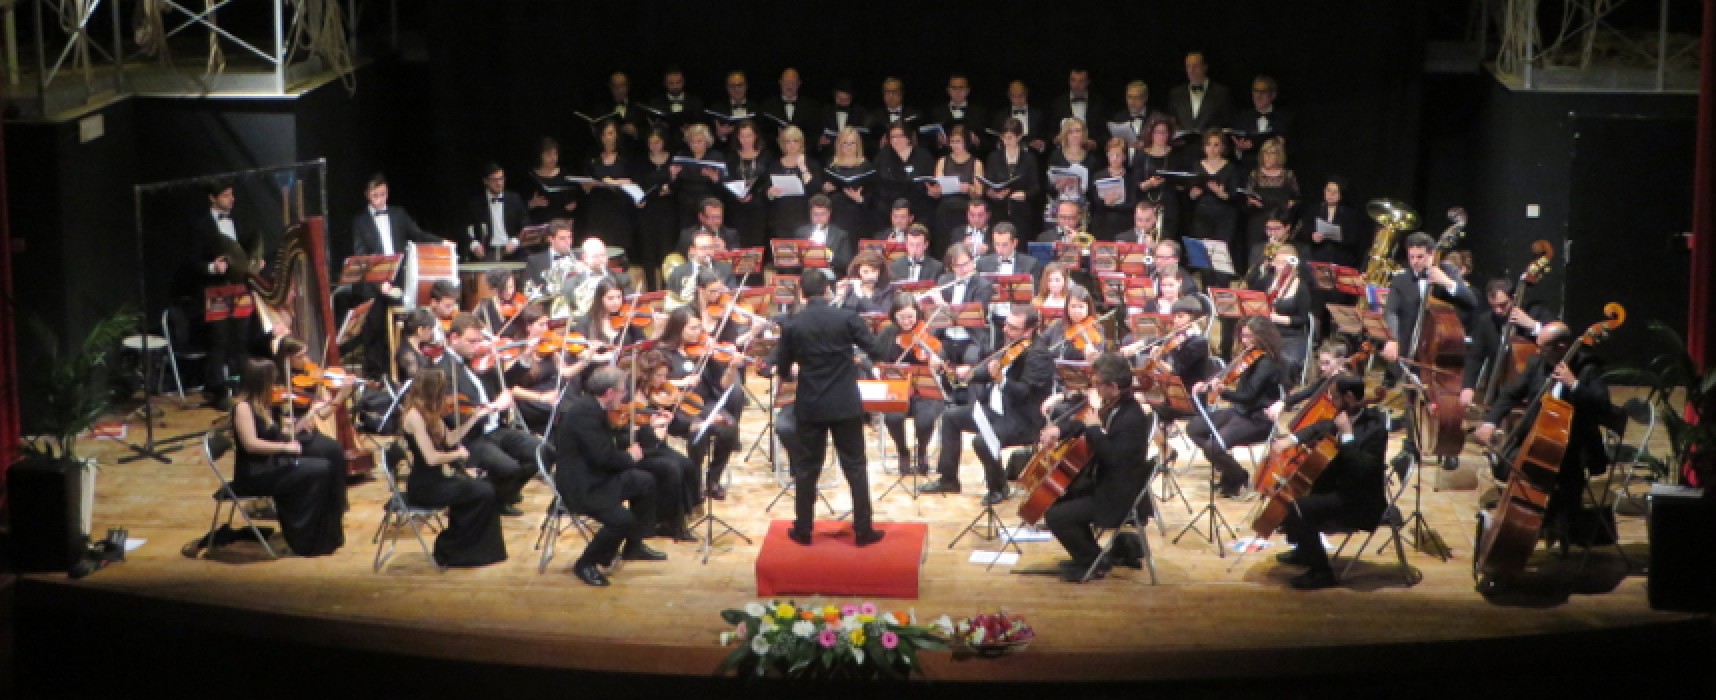 Concerto di Primavera, soddisfatti e partecipi gli spettatori del Teatro Garibaldi / FOTO